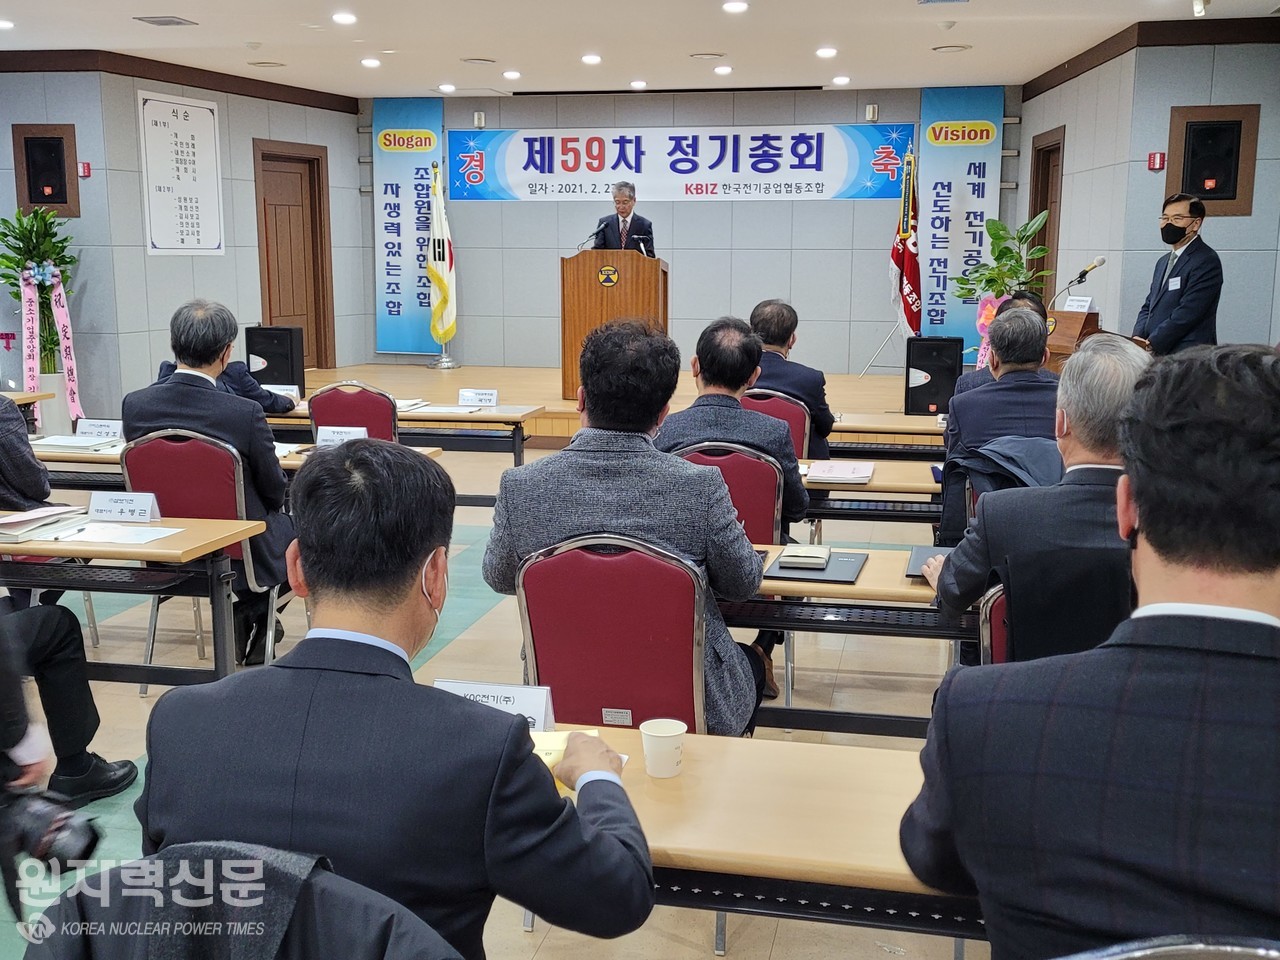 한국전기공업협동조합은 23일 성남시 조합 회관에서 ‘2021년도 제59차 정기총회’를 개최했다.  (사진 = 이석우 기자)